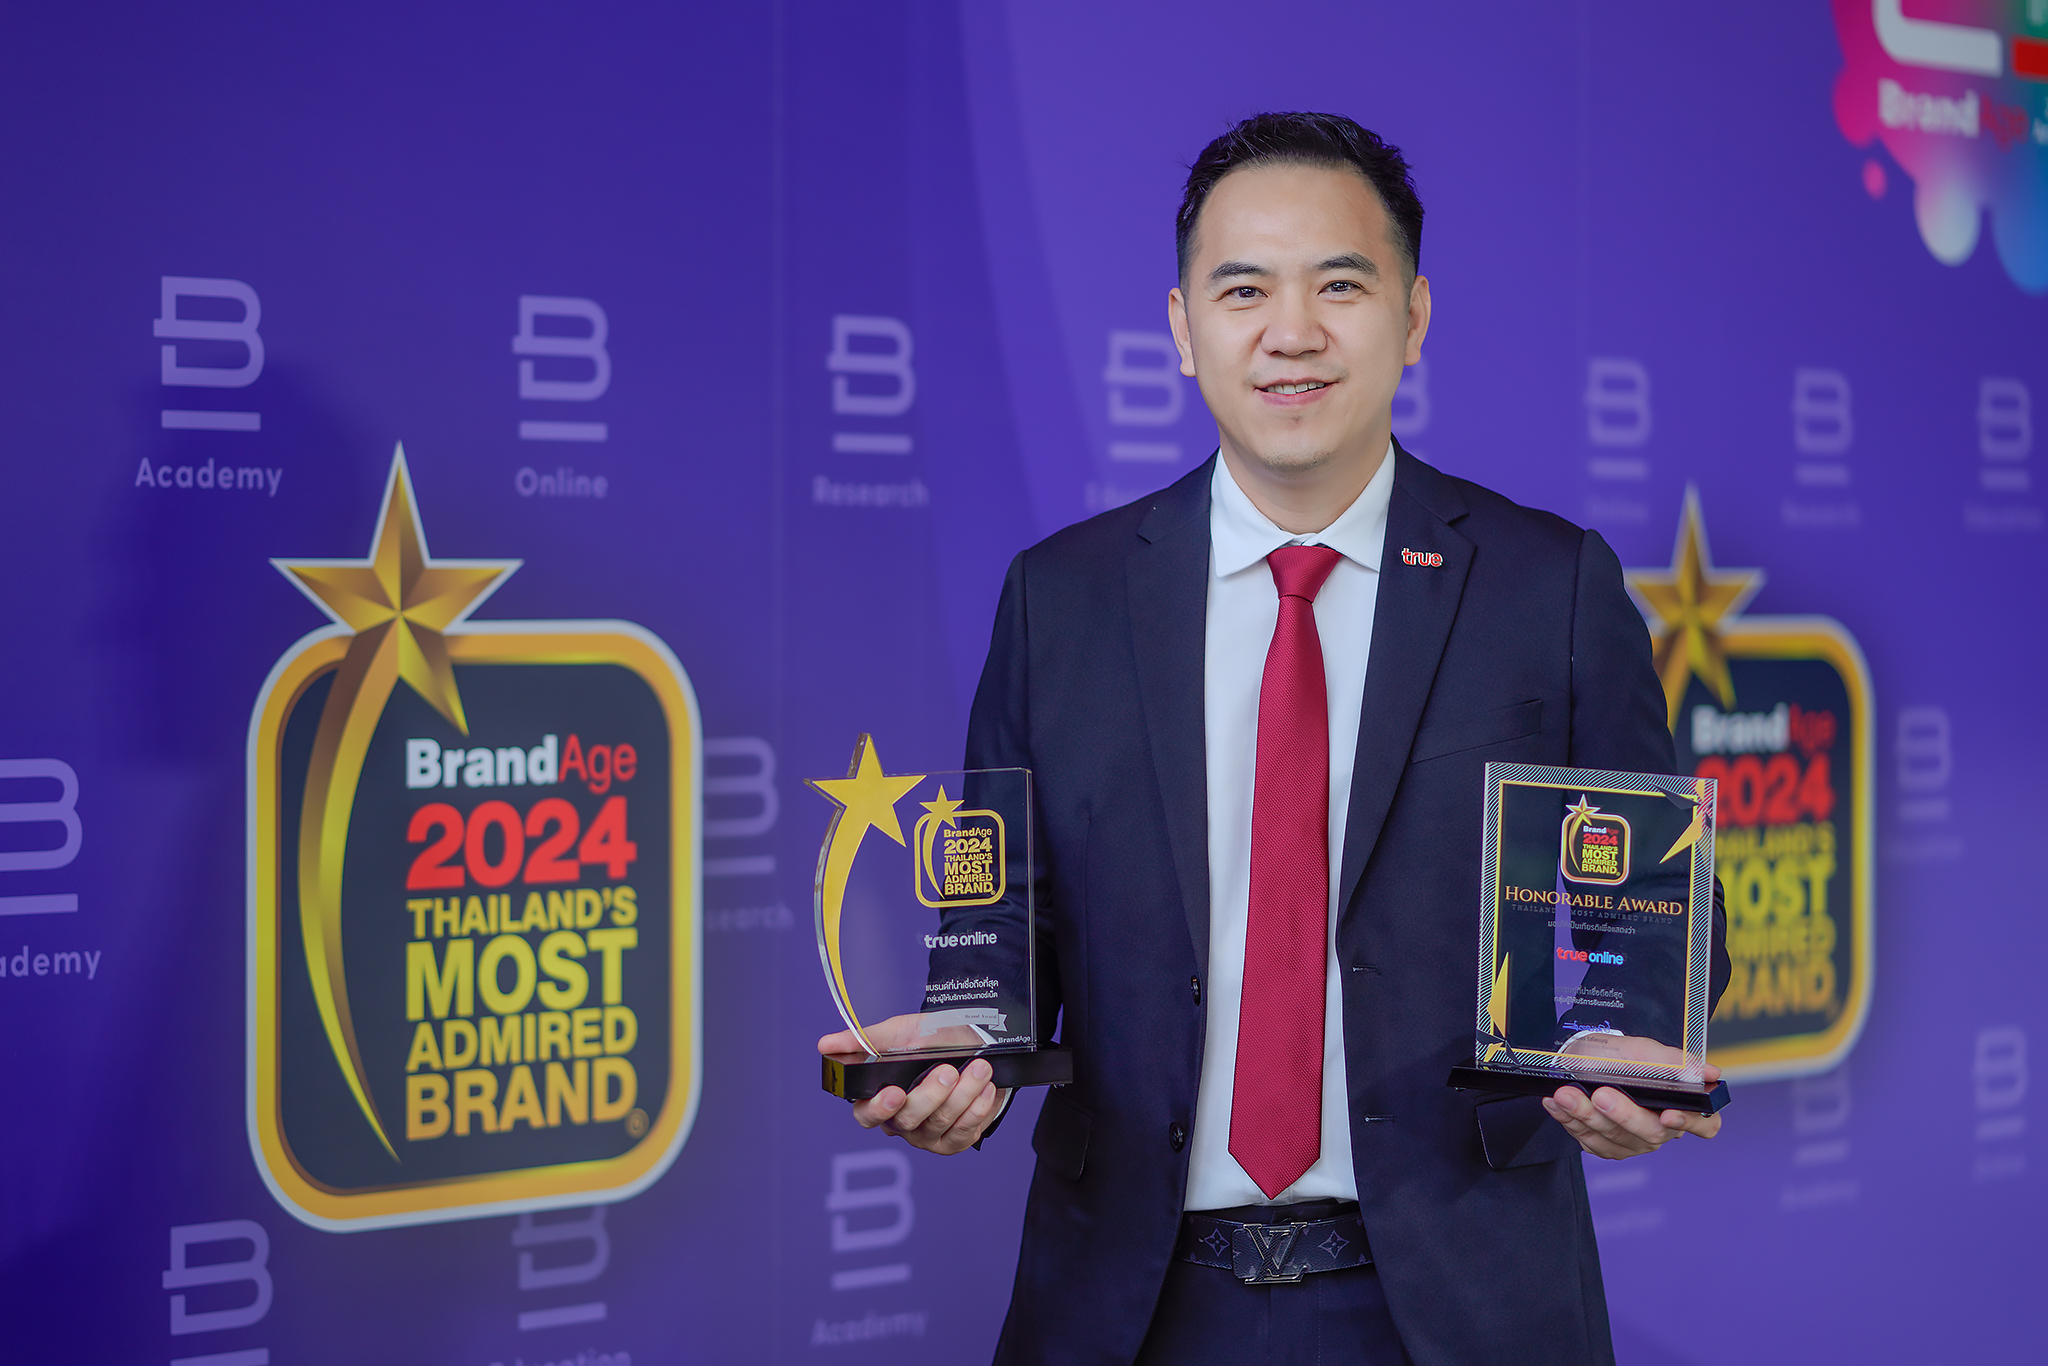 ทรูออนไลน์ ย้ำผู้นำแบรนด์เน็ตบ้านไฟเบอร์อันดับ 1 คว้ารางวัล 2024 Thailand’s Most Admired Brand ต่อเนื่องเป็นปีที่ 11